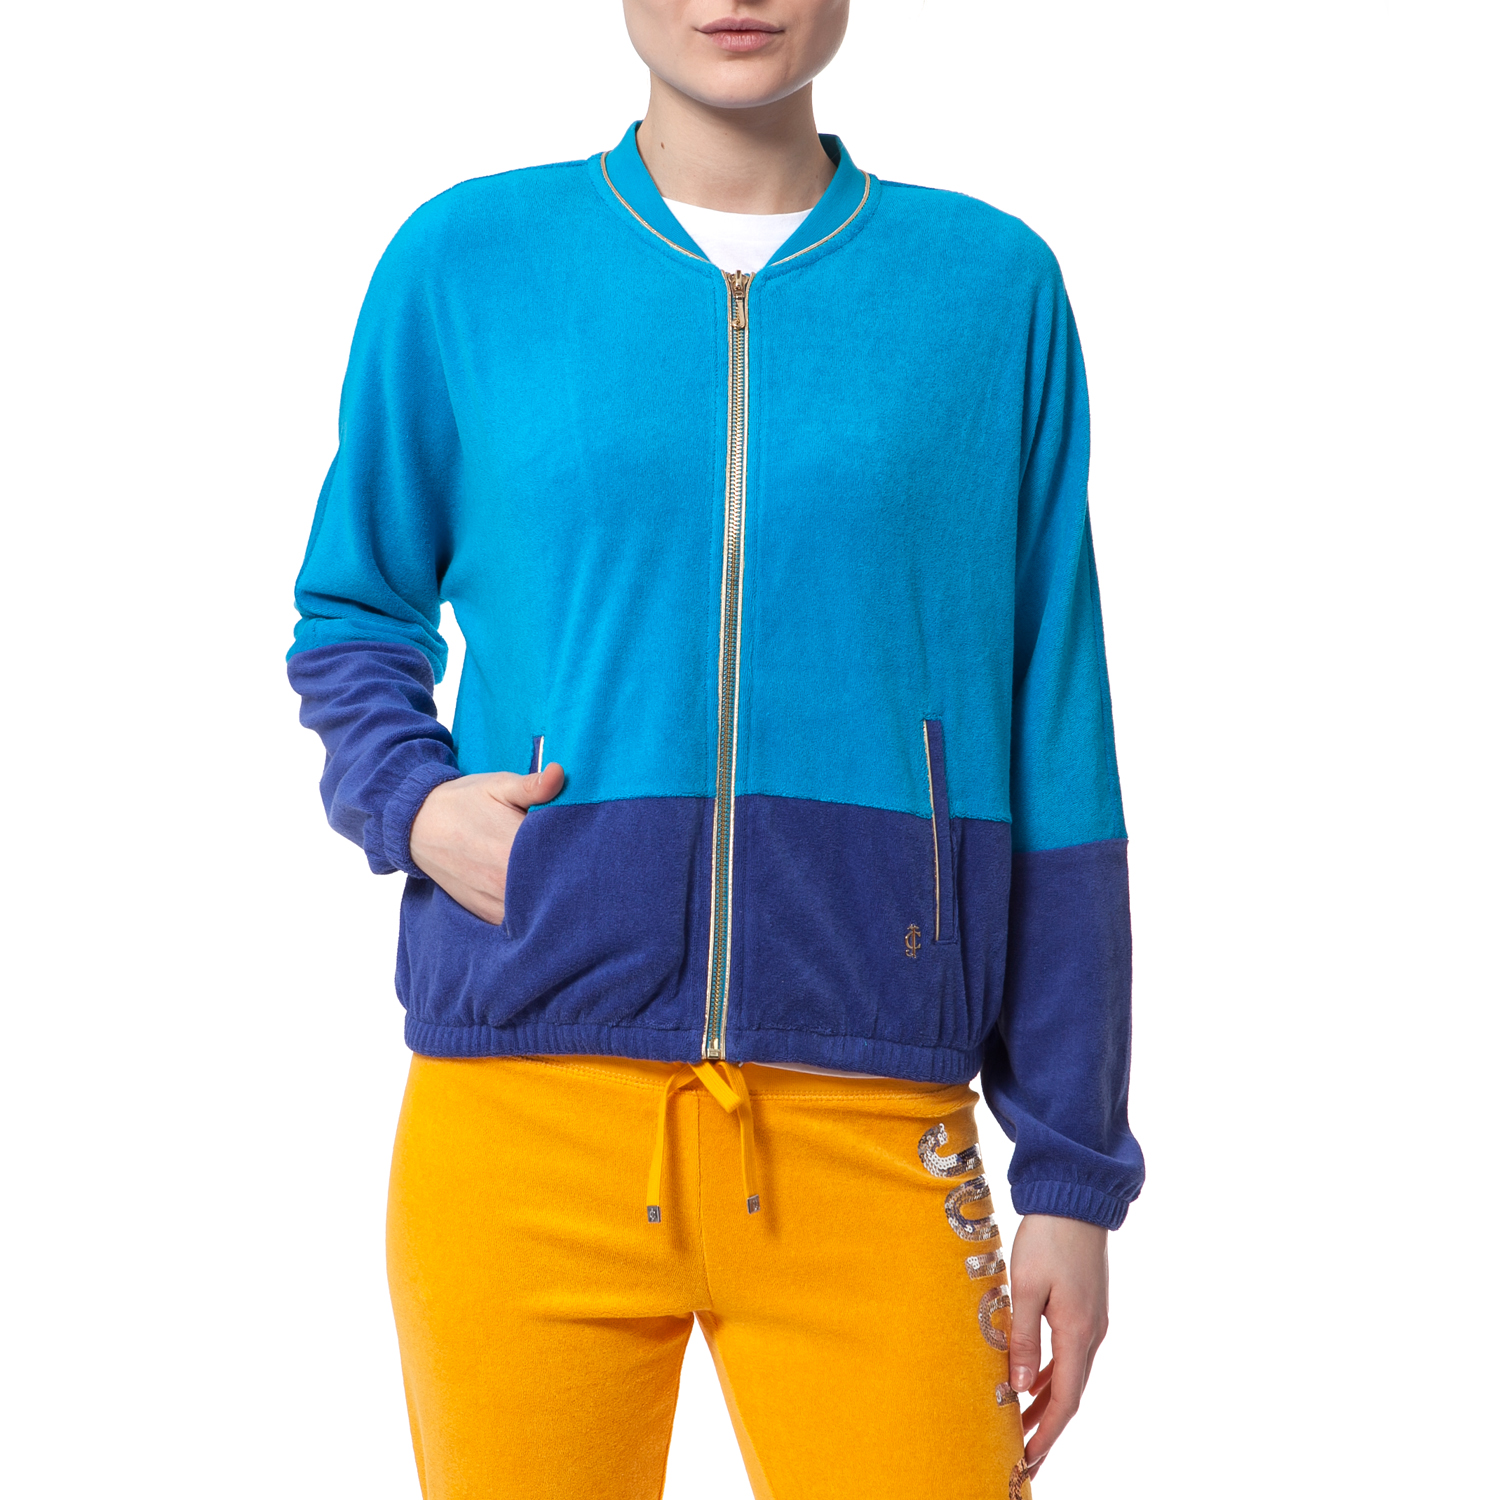 Γυναικεία/Ρούχα/Πανωφόρια/Τζάκετς JUICY COUTURE - Γυναικείο τζάκετ Juicy Couture μπλε